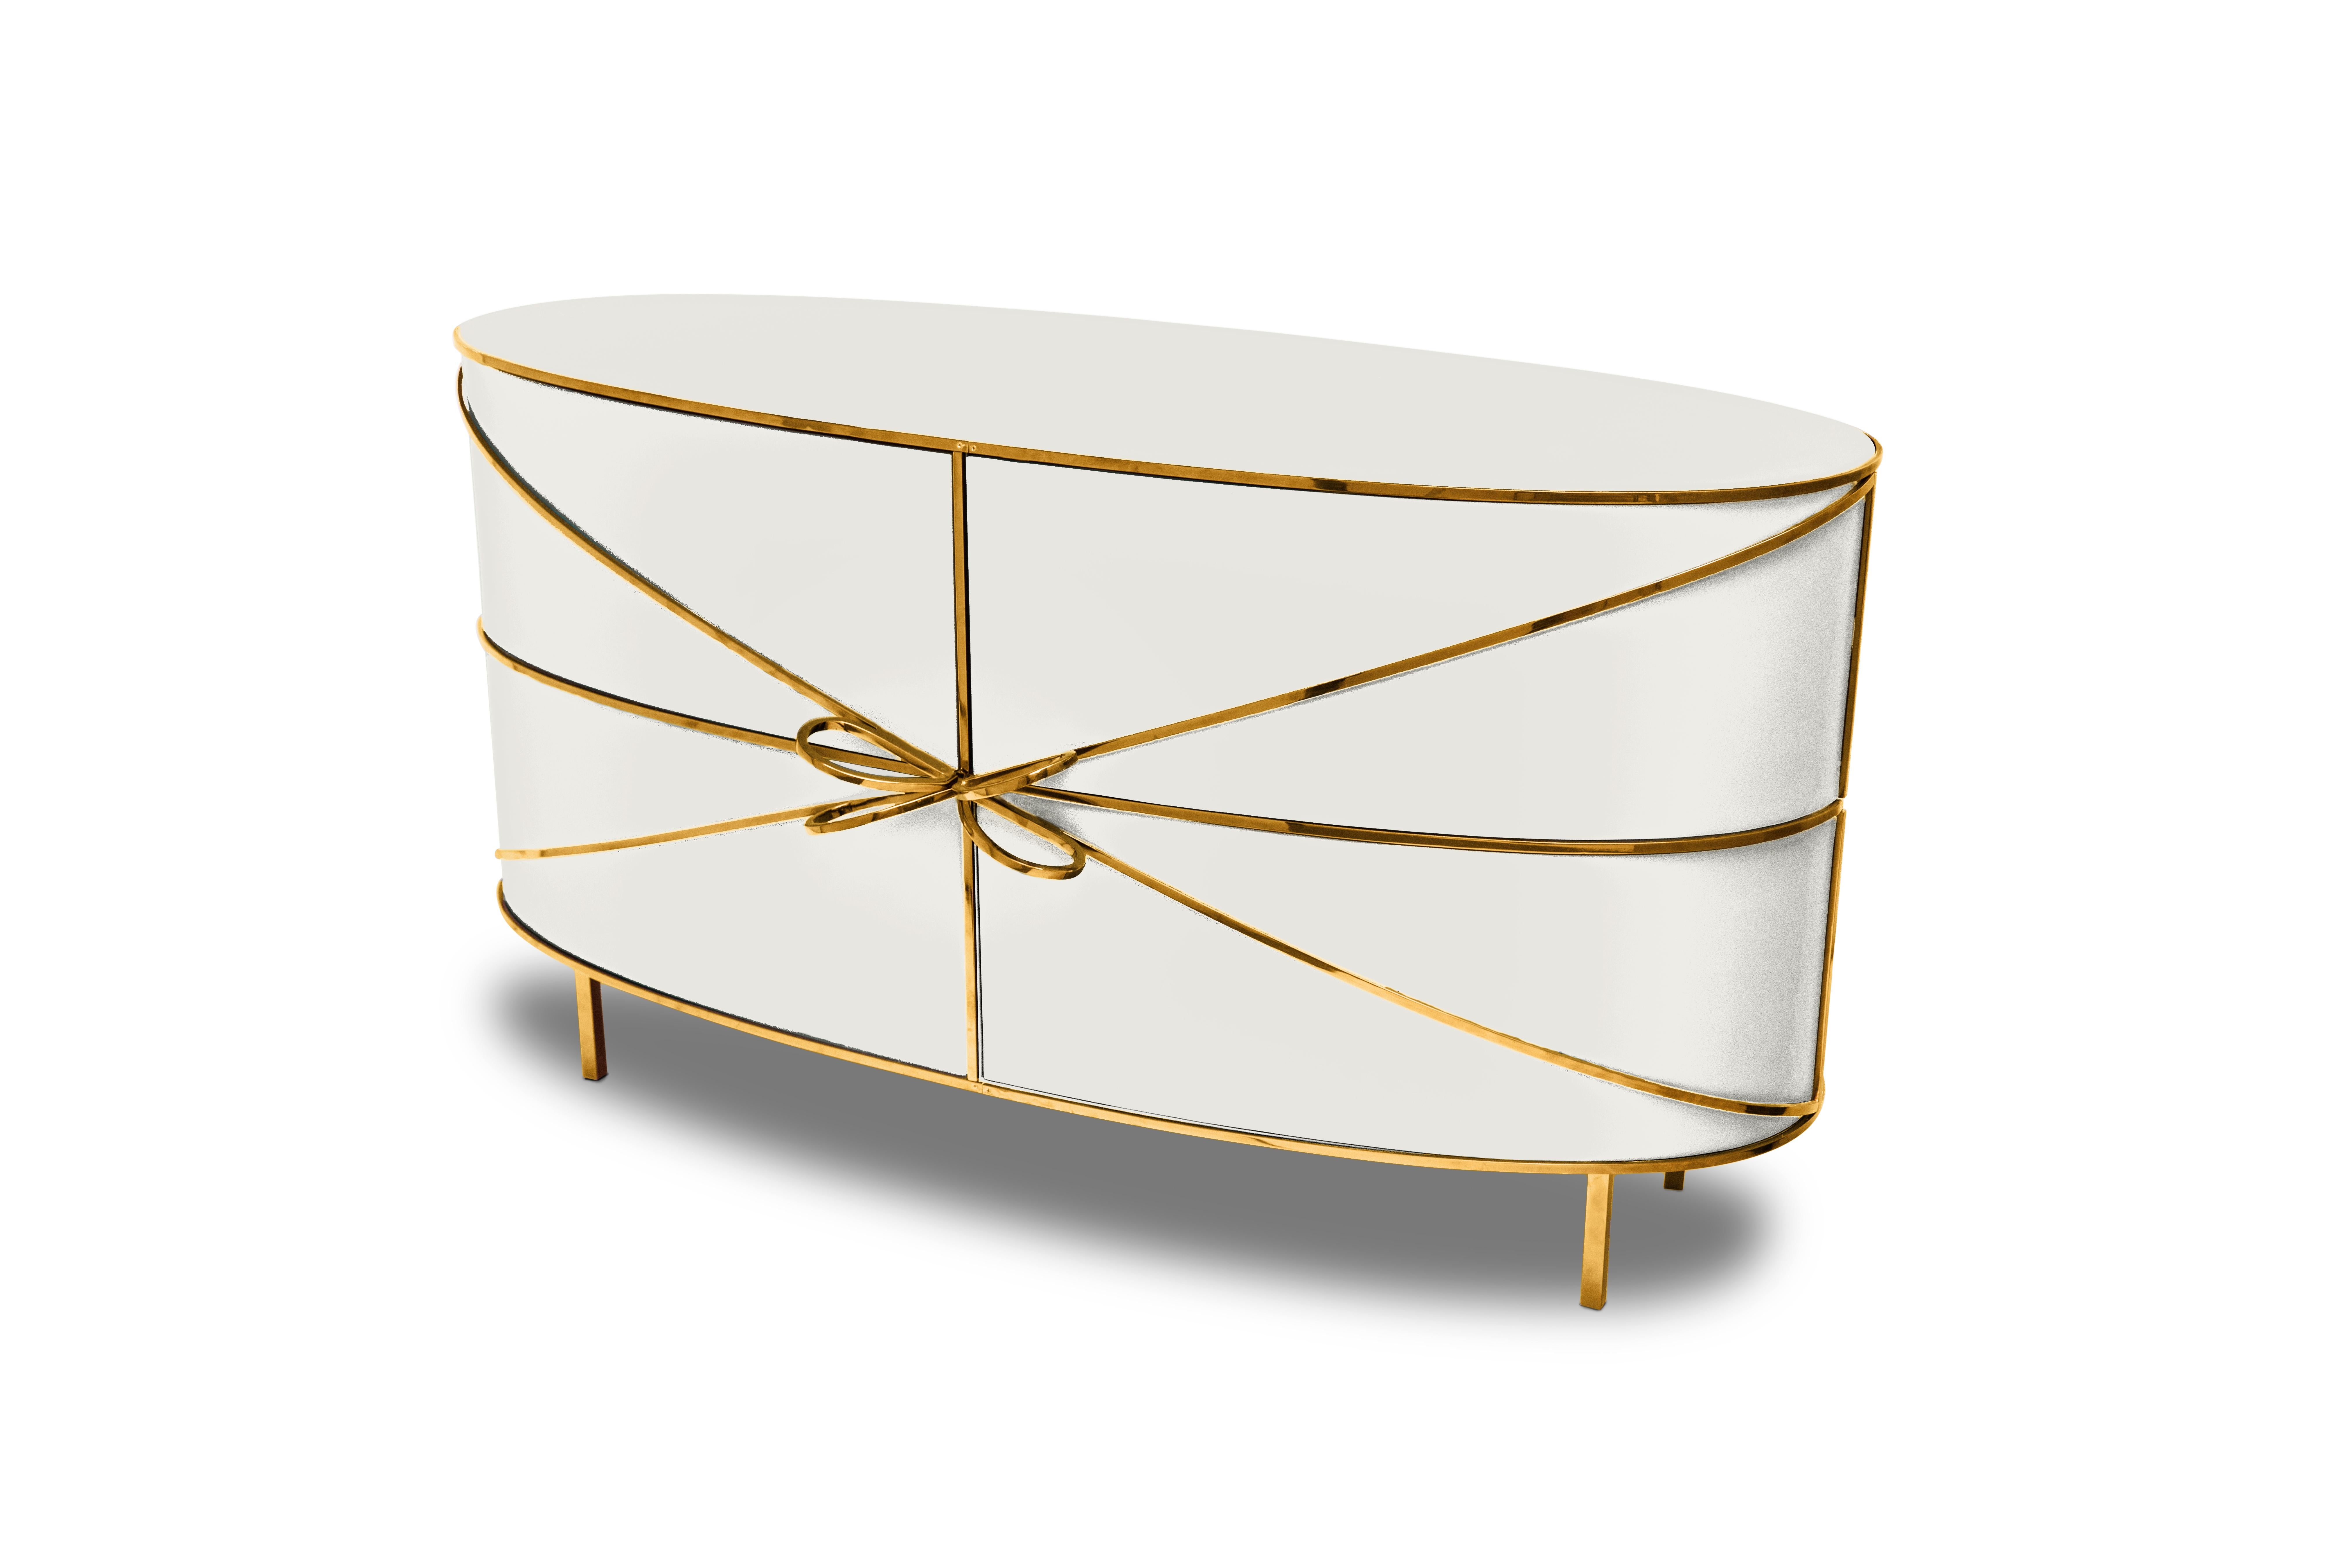 88 Secrets Sideboard blanc avec garnitures dorées Nika Zupanc est un meuble blanc immaculé aux lignes sensuelles et féminines avec de luxueuses garnitures en métal doré. Une pièce maîtresse dans tout espace intérieur !

Nika Zupanc, designer slovène